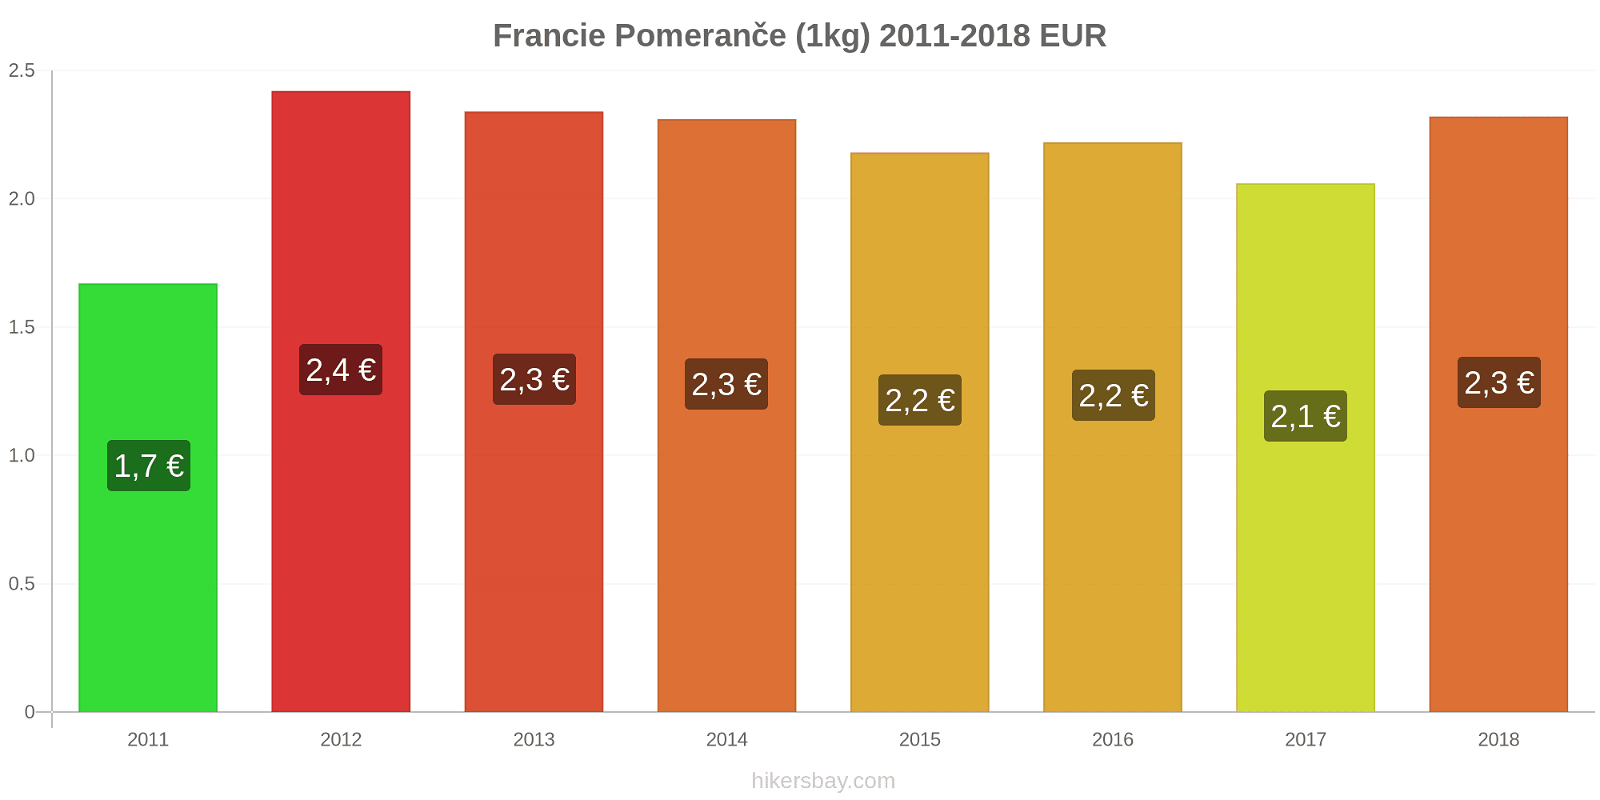 Francie změny cen Pomeranče (1kg) hikersbay.com